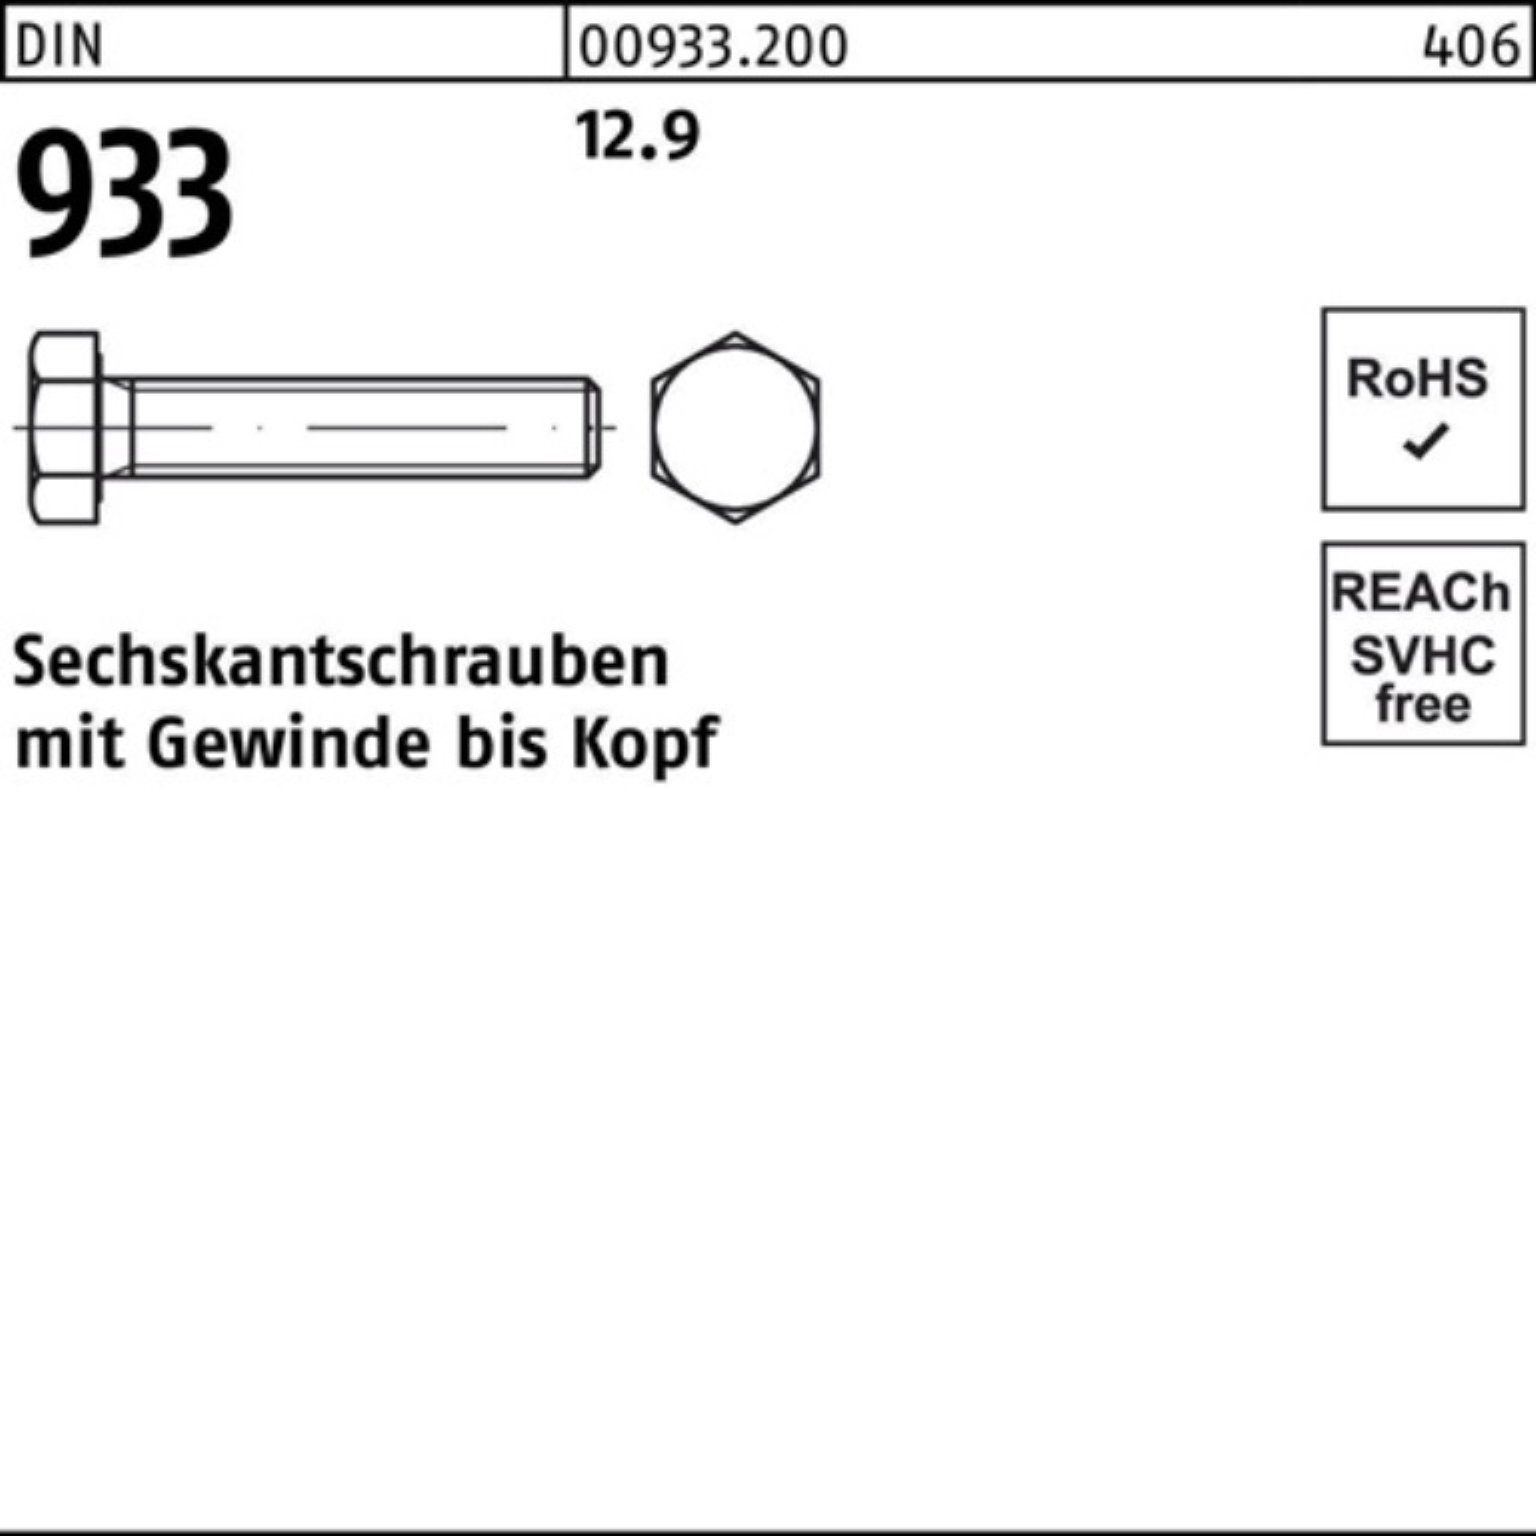 Sechskantschraube Sechskantschraube 100er M16x VG DIN Stück DIN 933 Pack 90 25 12.9 933 Reyher